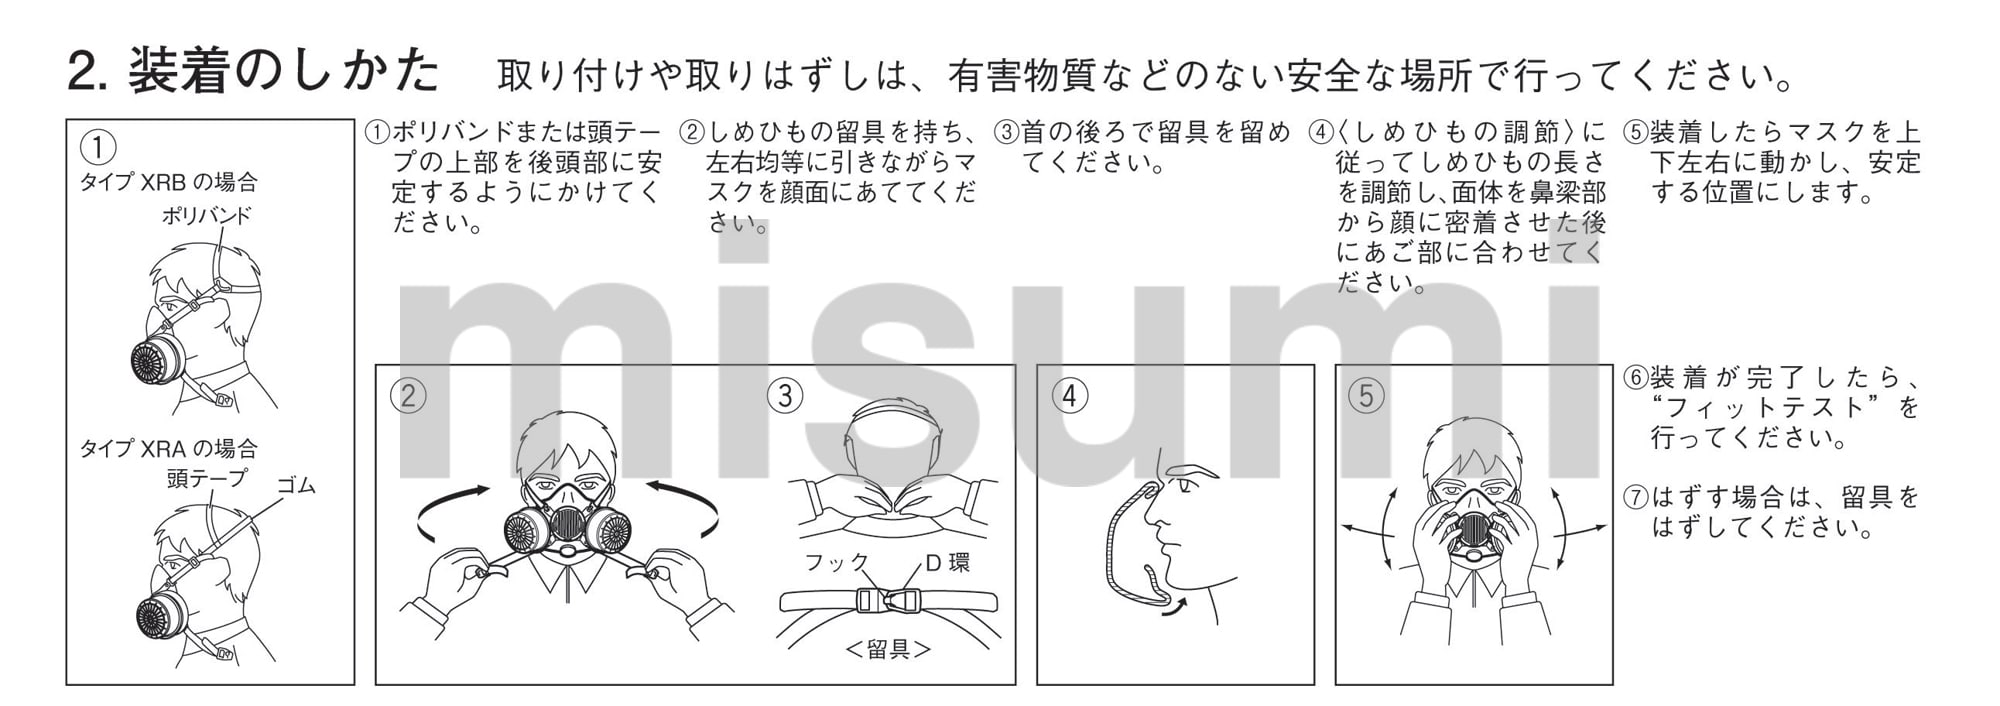 直結式小型防毒マスク サカヰ式 DD-3-03型 興研 MISUMI(ミスミ)